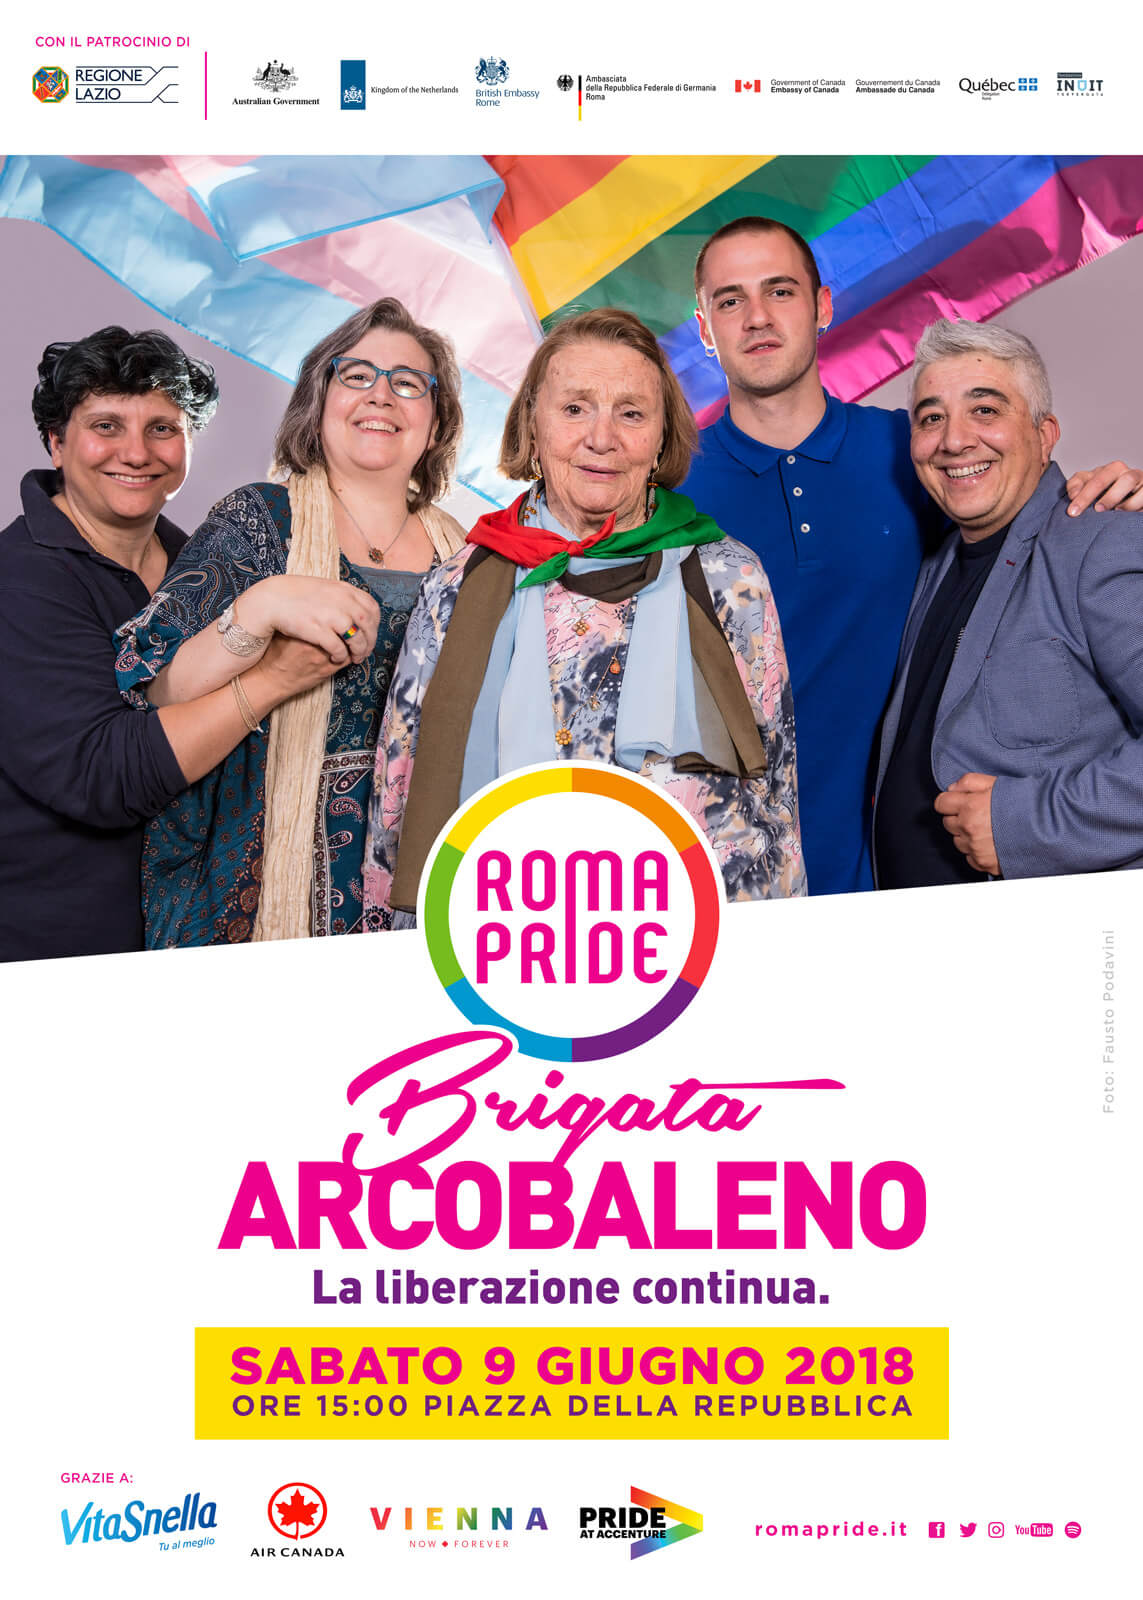 Roma Pride 2018, ci sarà il presidente della Regione Nicola Zingaretti - e la Sindaca Virginia Raggi? - Brigata Arcobaleno Soggetto 3 - Gay.it